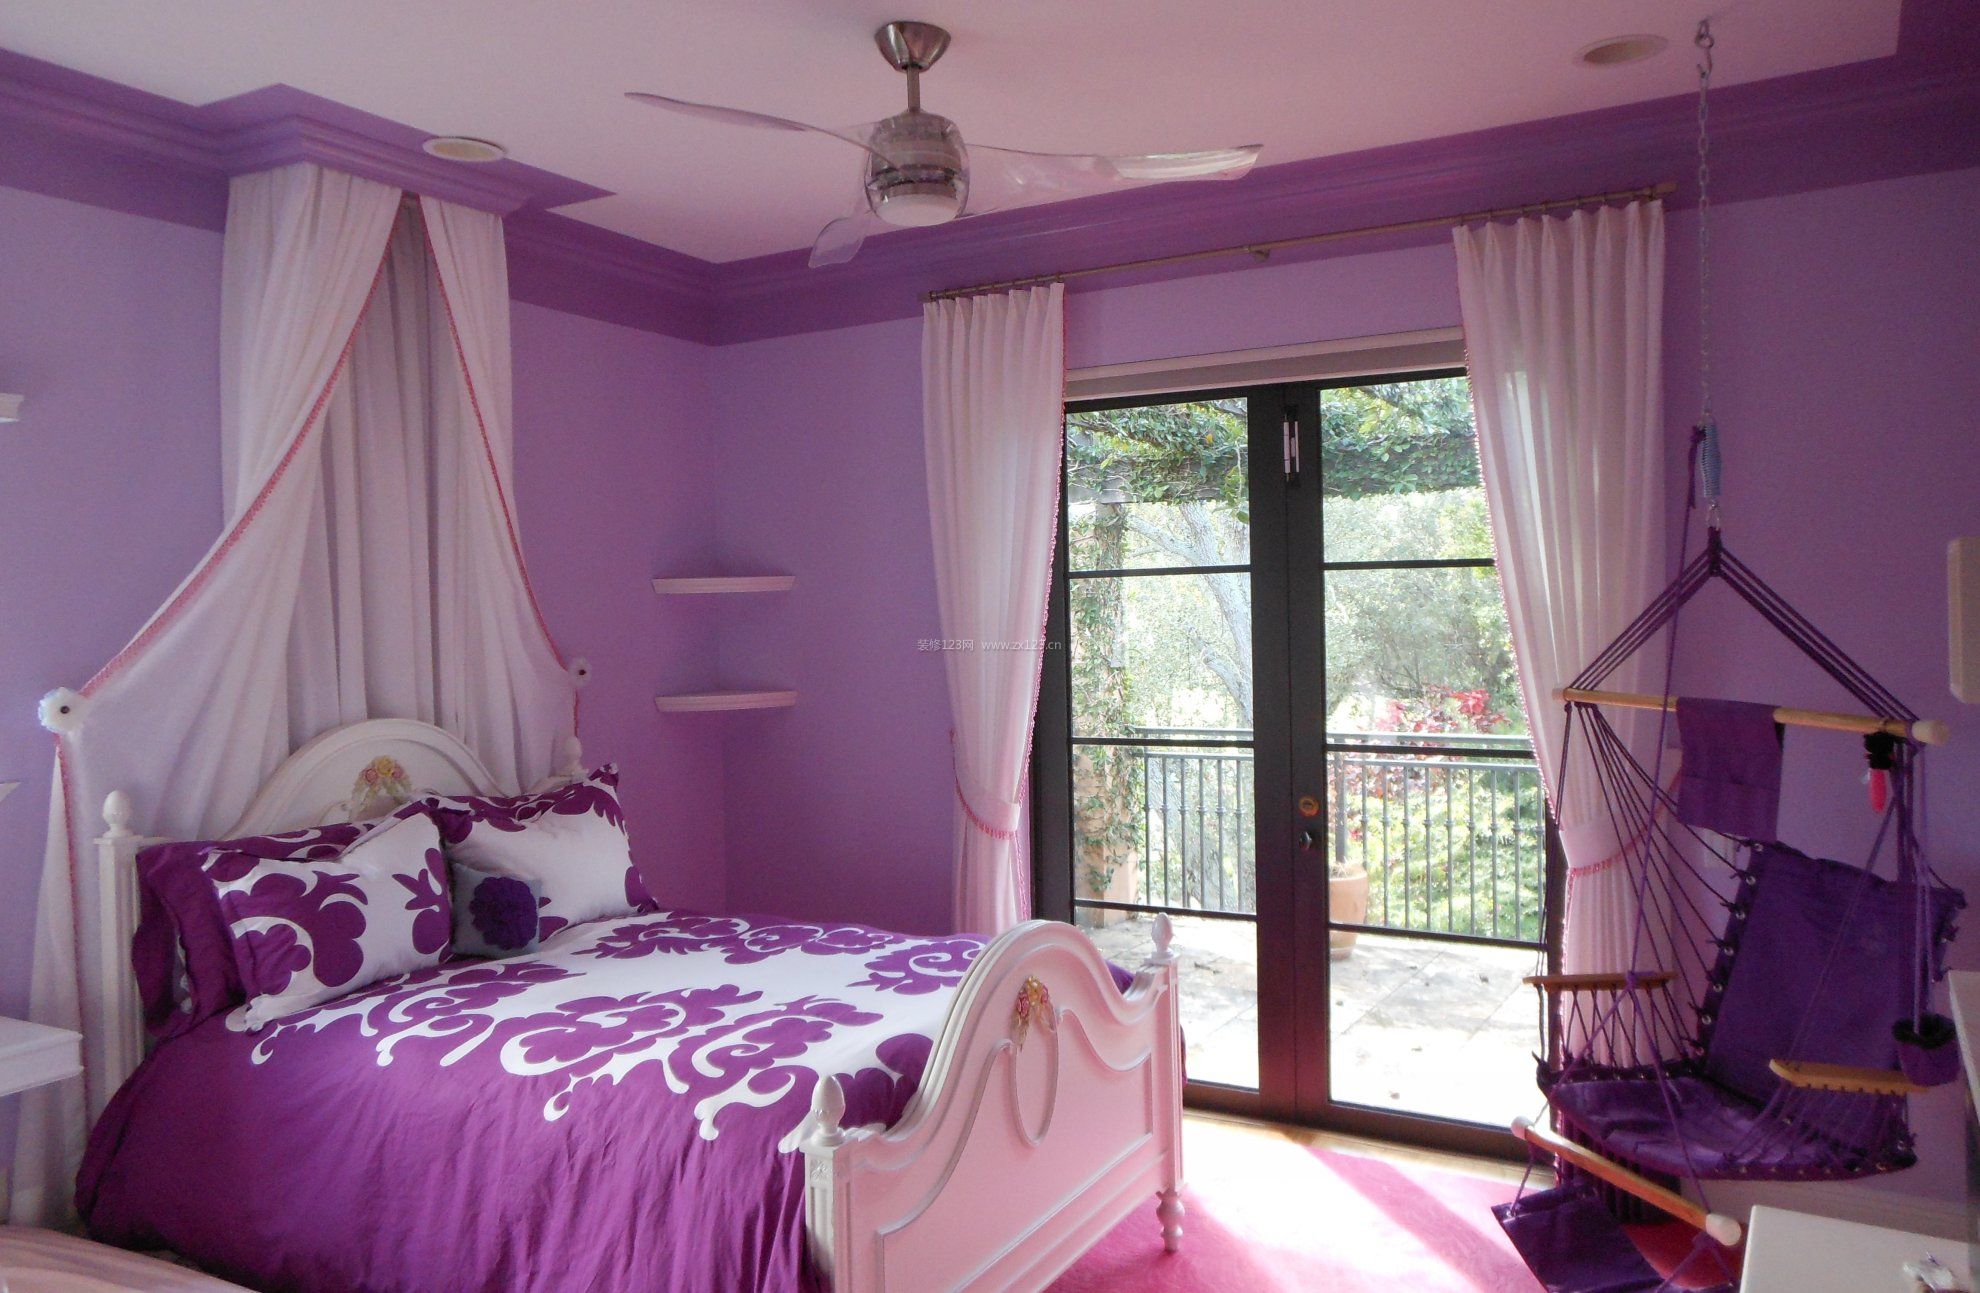 紫色系女生房间装潢图片